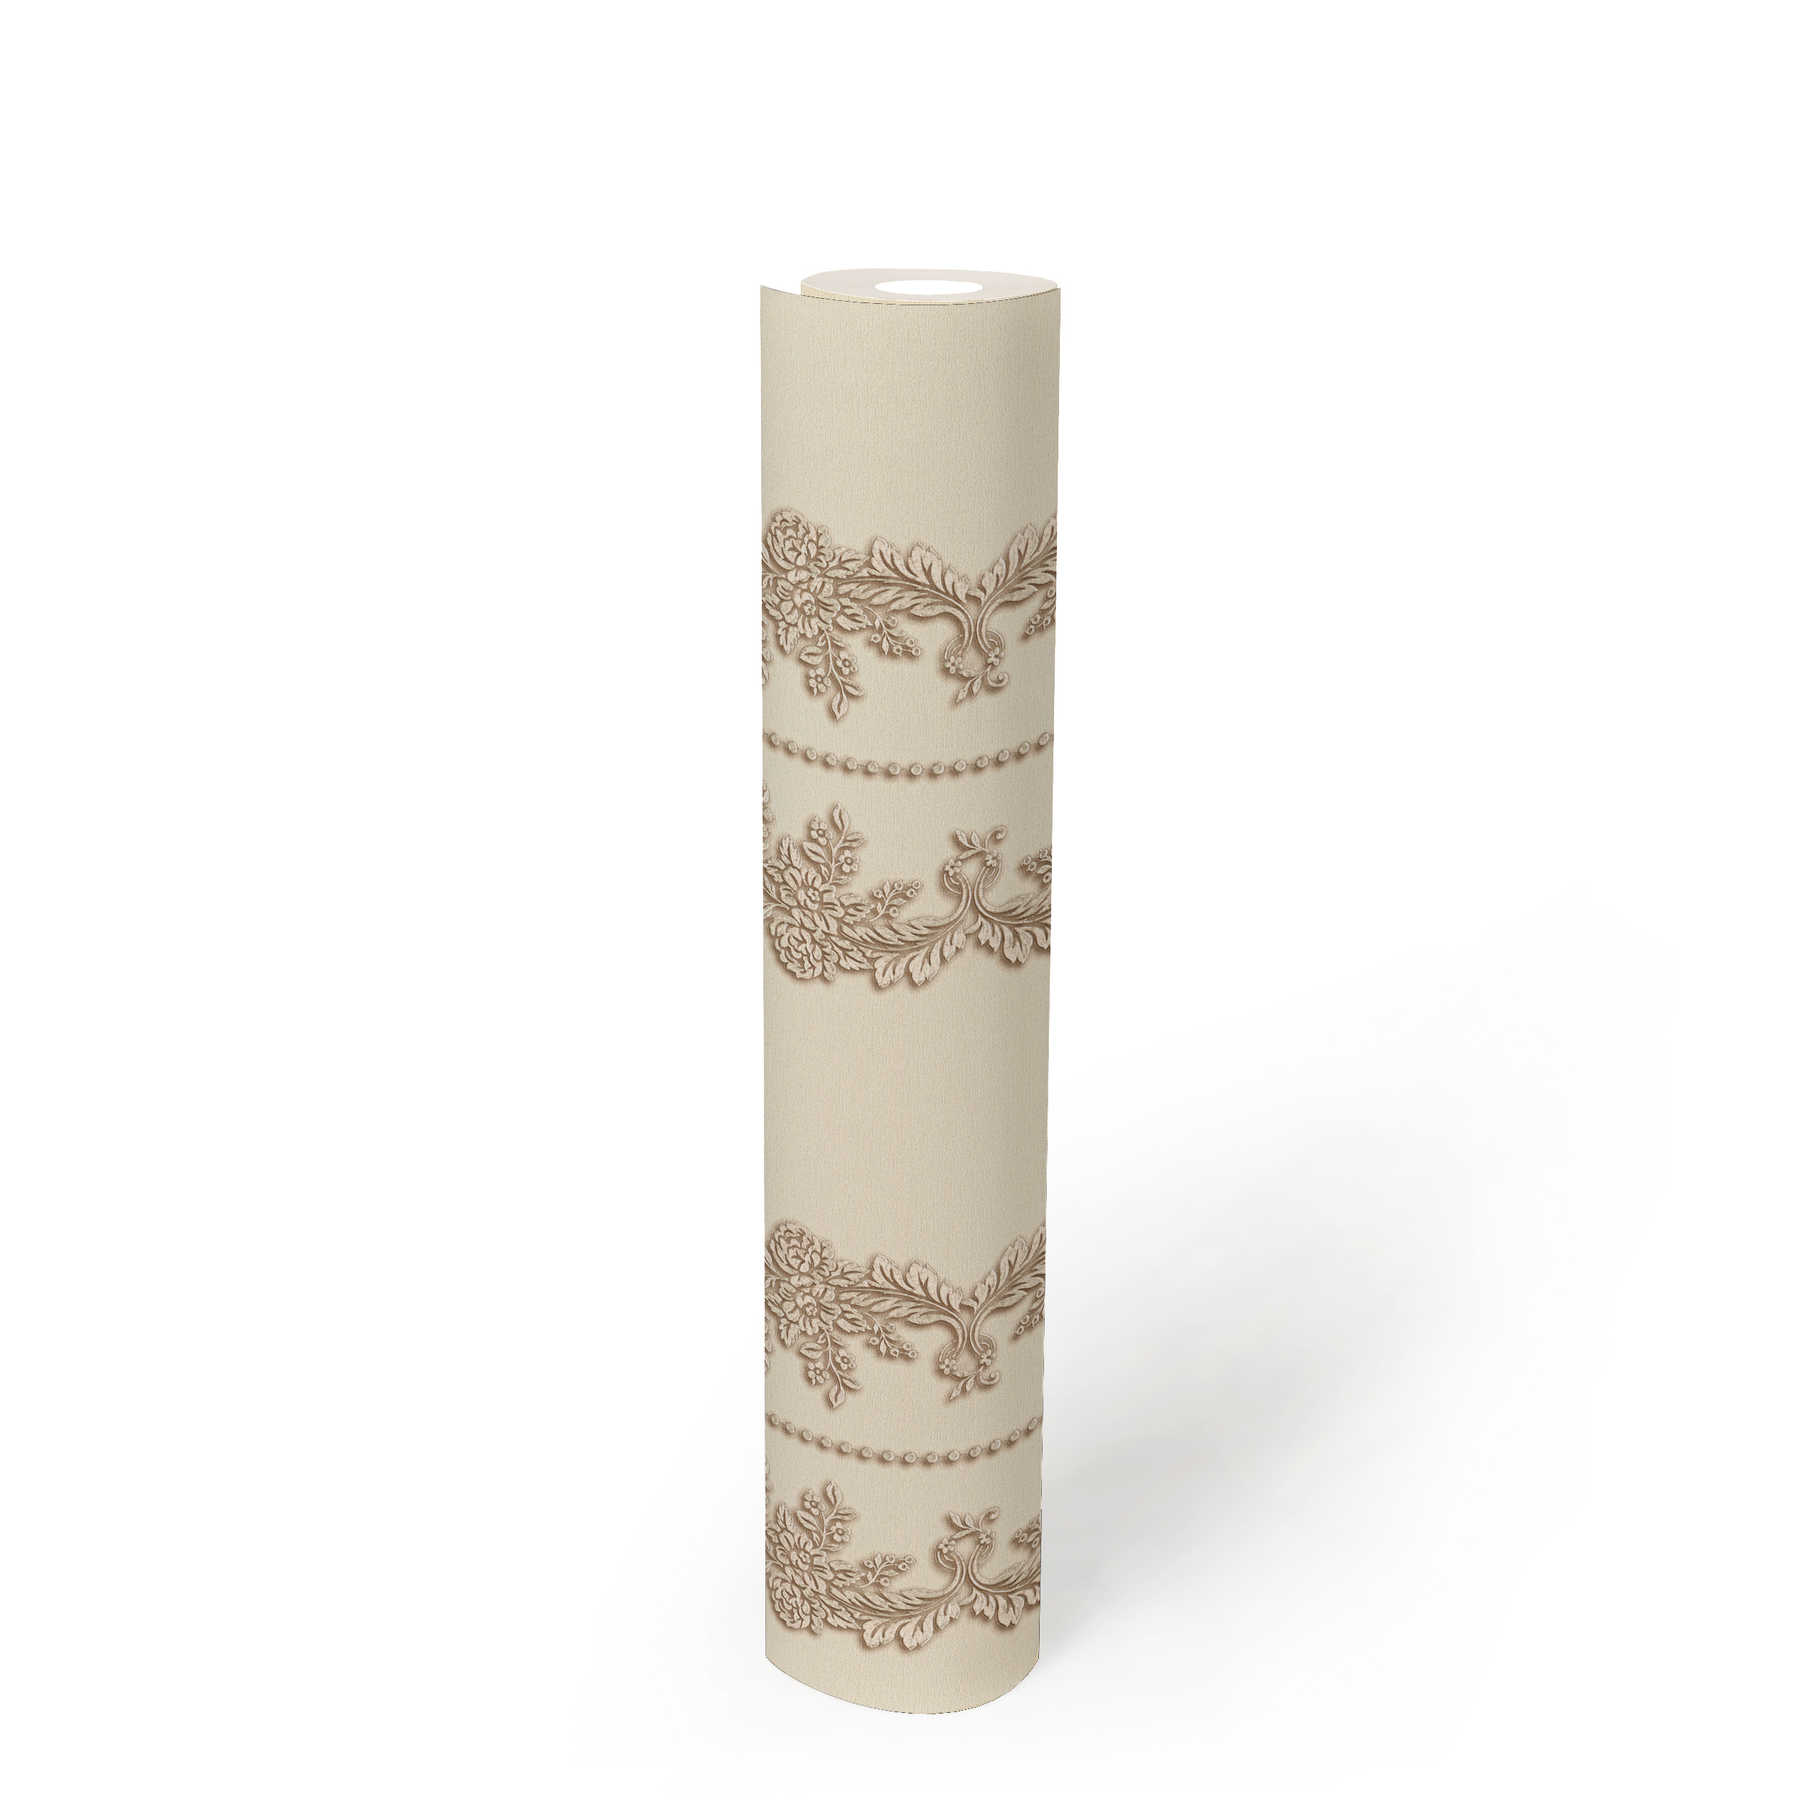             Classique Décor Papier peint motif floral ornemental - beige, métallique
        